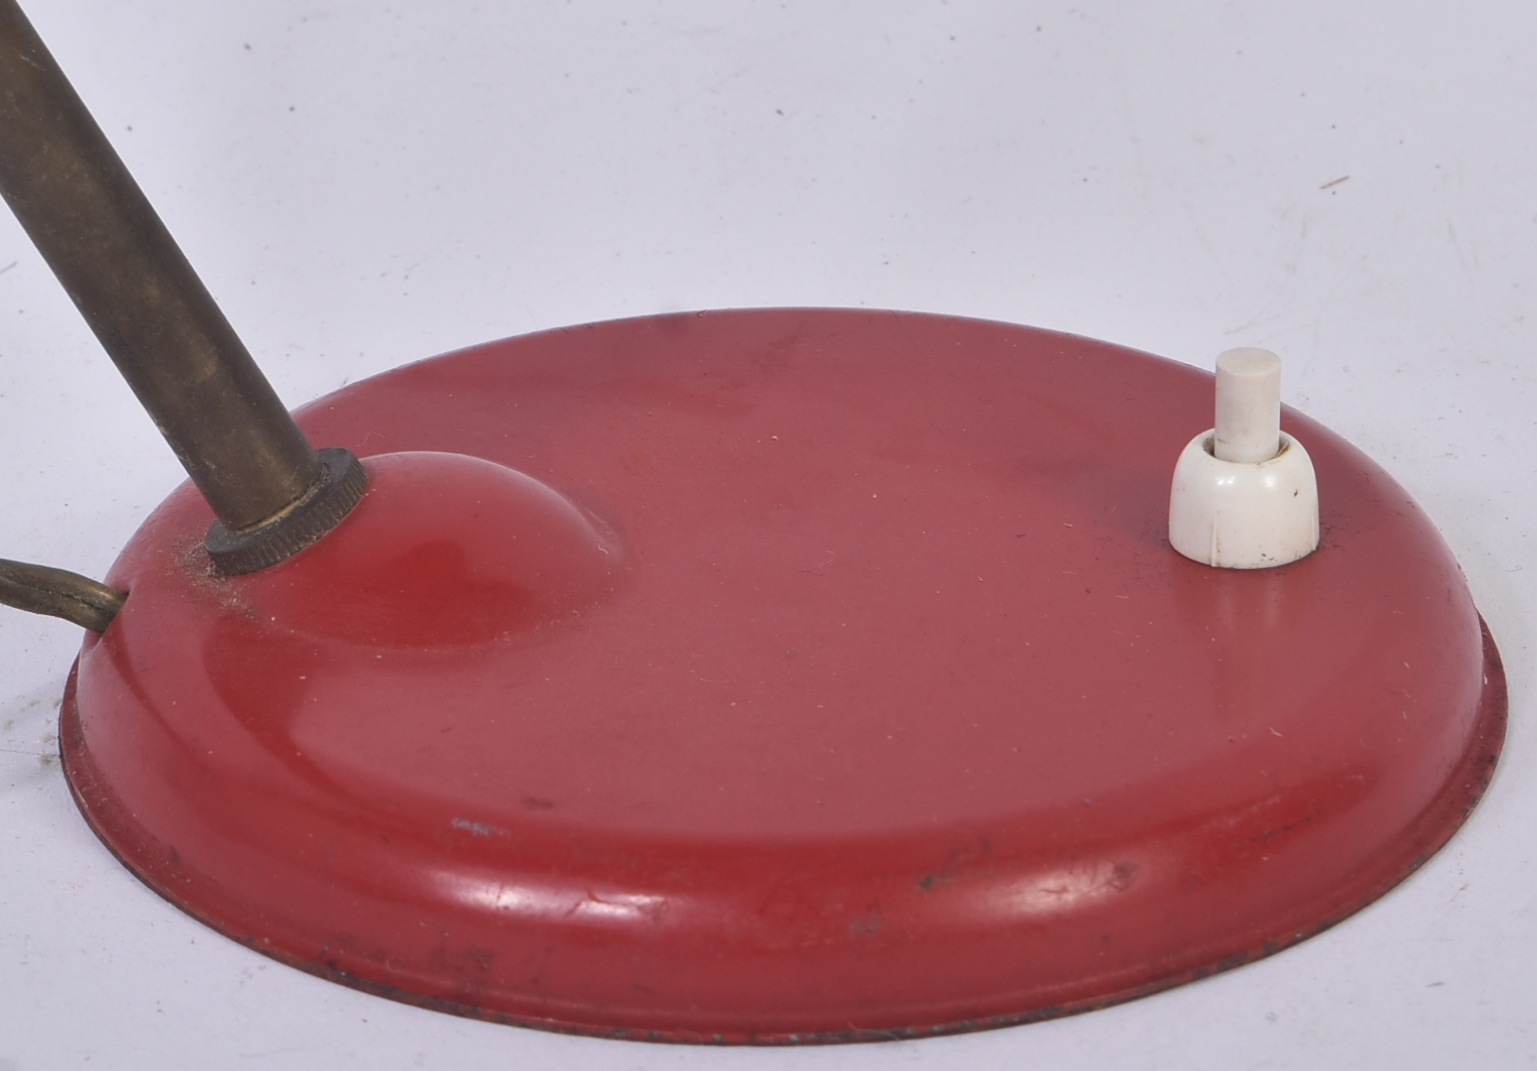 MID CENTURY RED MUSHROOM TABLE / DESK LAMP - Image 4 of 4